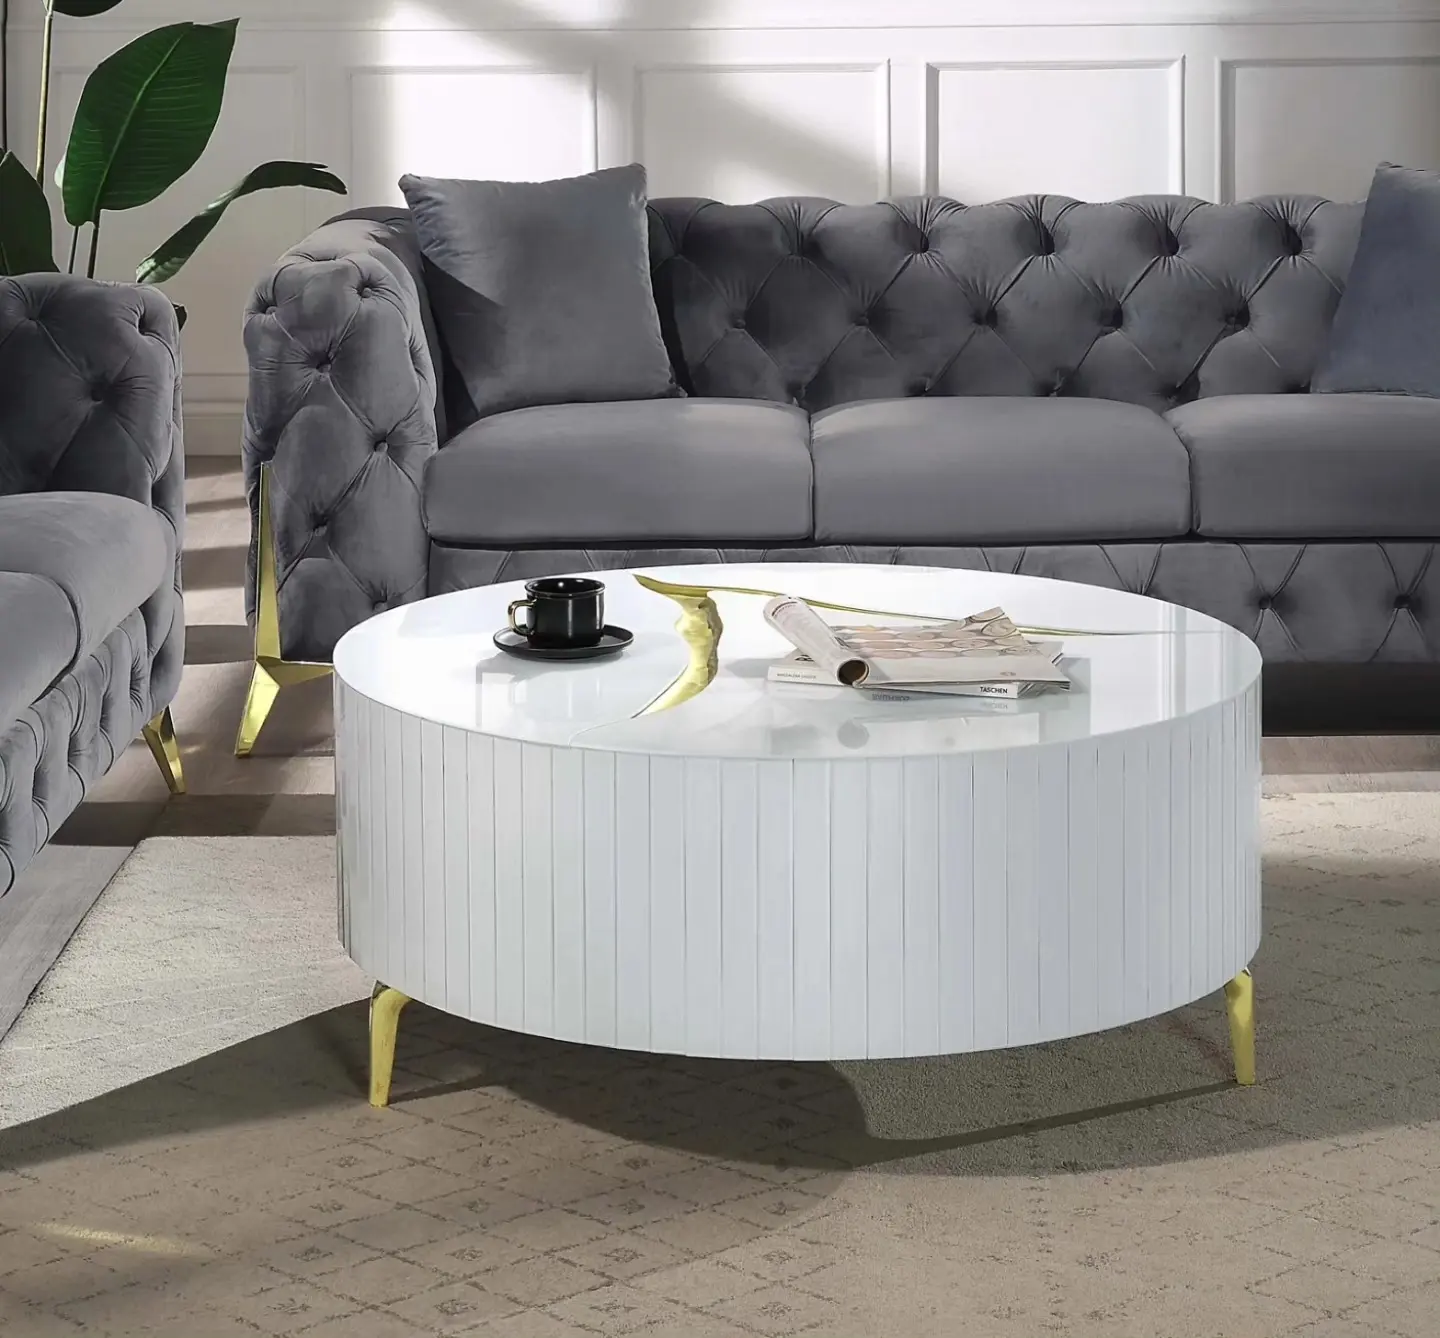 Table de centre de luxe Mobilier de salon moderne Table basse ronde blanche